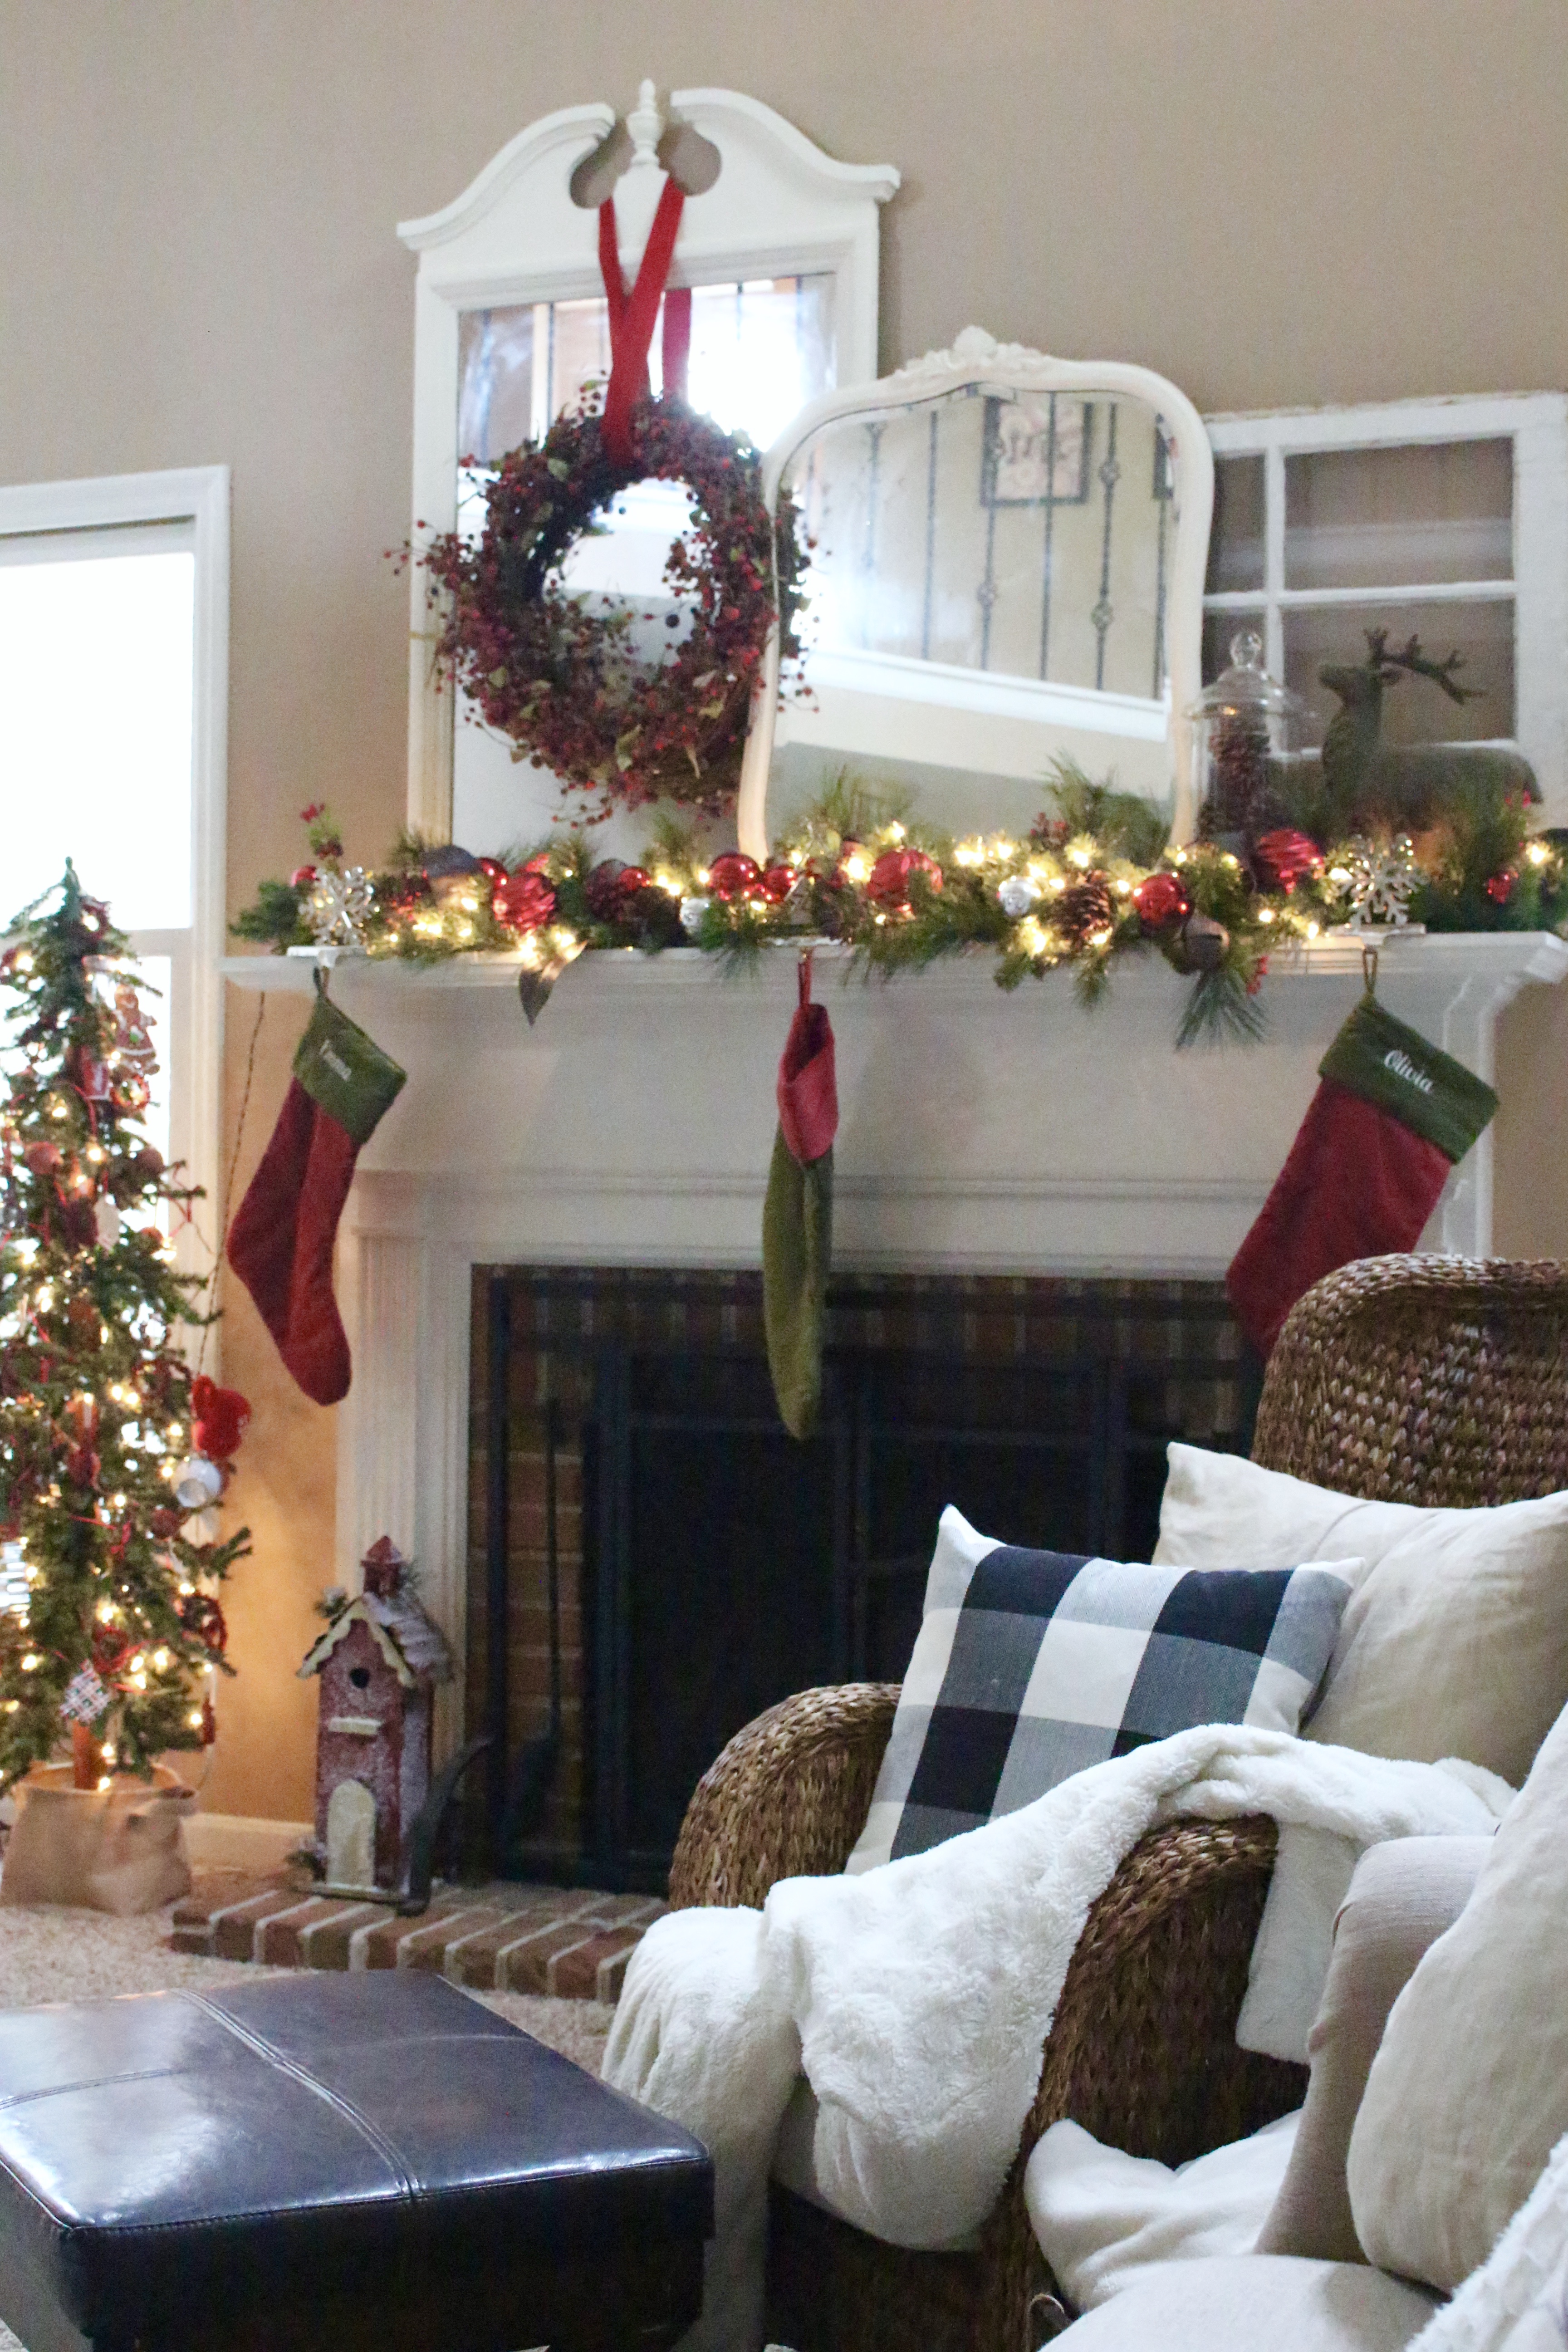 Christmas tour- holidays- decorating- home decor ideas for Christmas- Christmas home tour- holiday home- decorating for Christmas- holiday decorating